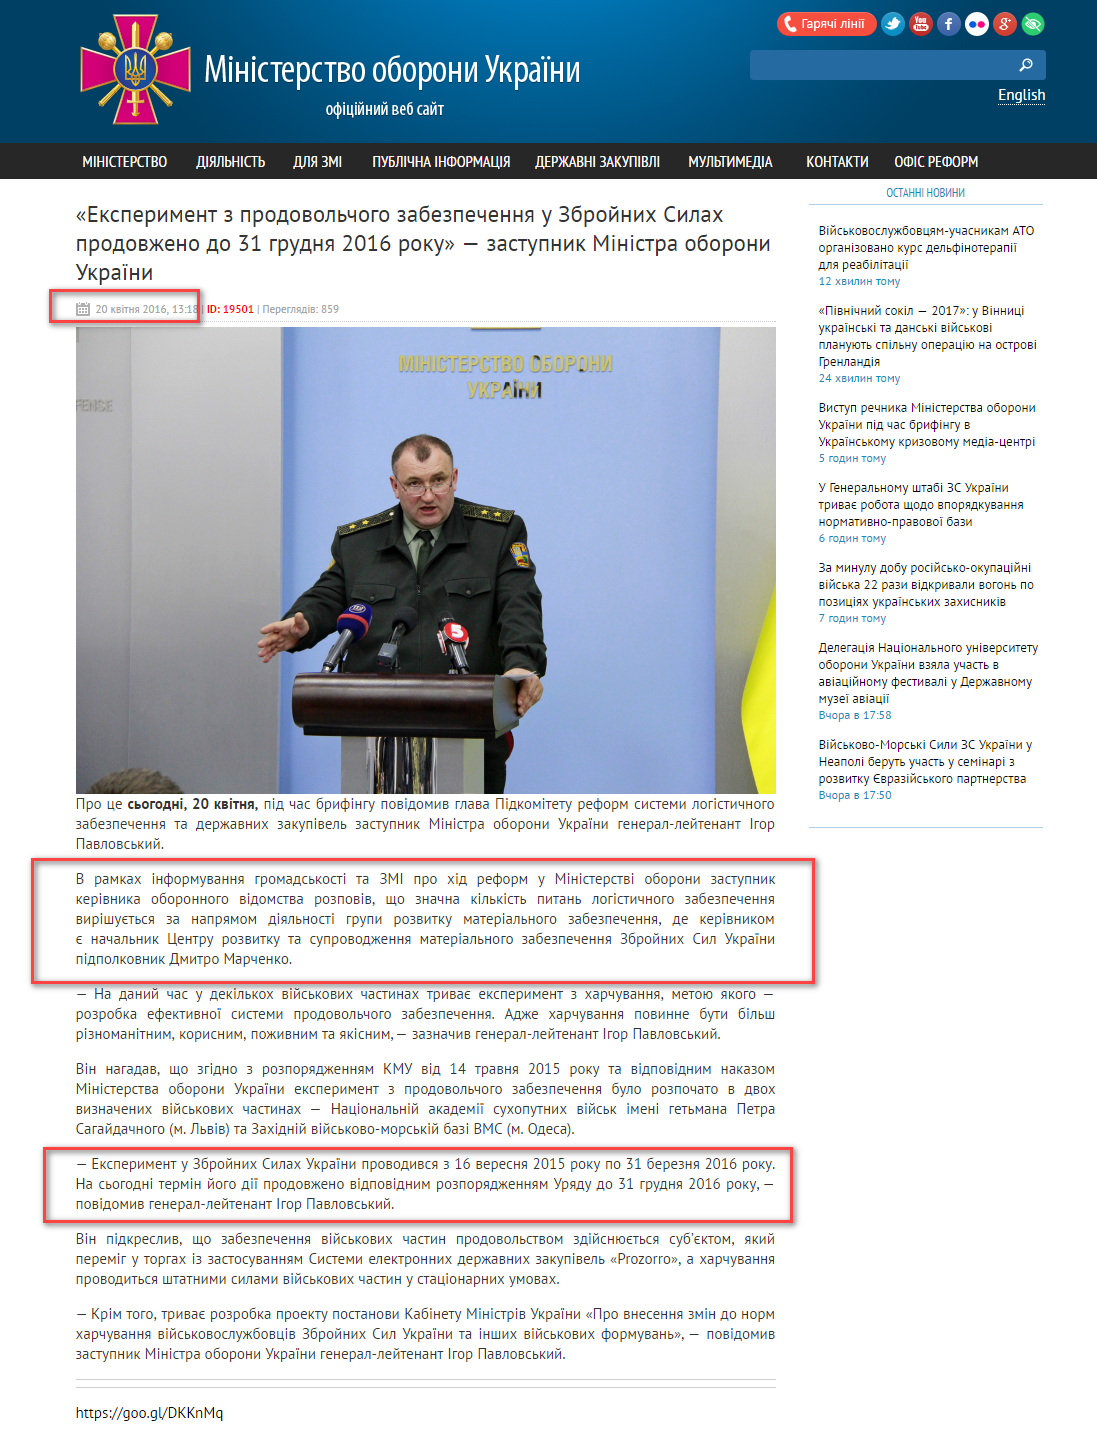 http://www.mil.gov.ua/news/2016/04/20/eksperiment-z-prodovolchogo-zabezpechennya-u-zbrojnih-silah-prodovzheno-do-31-grudnya-2016-roku-zastupnik-ministra-oboroni-ukraini--/